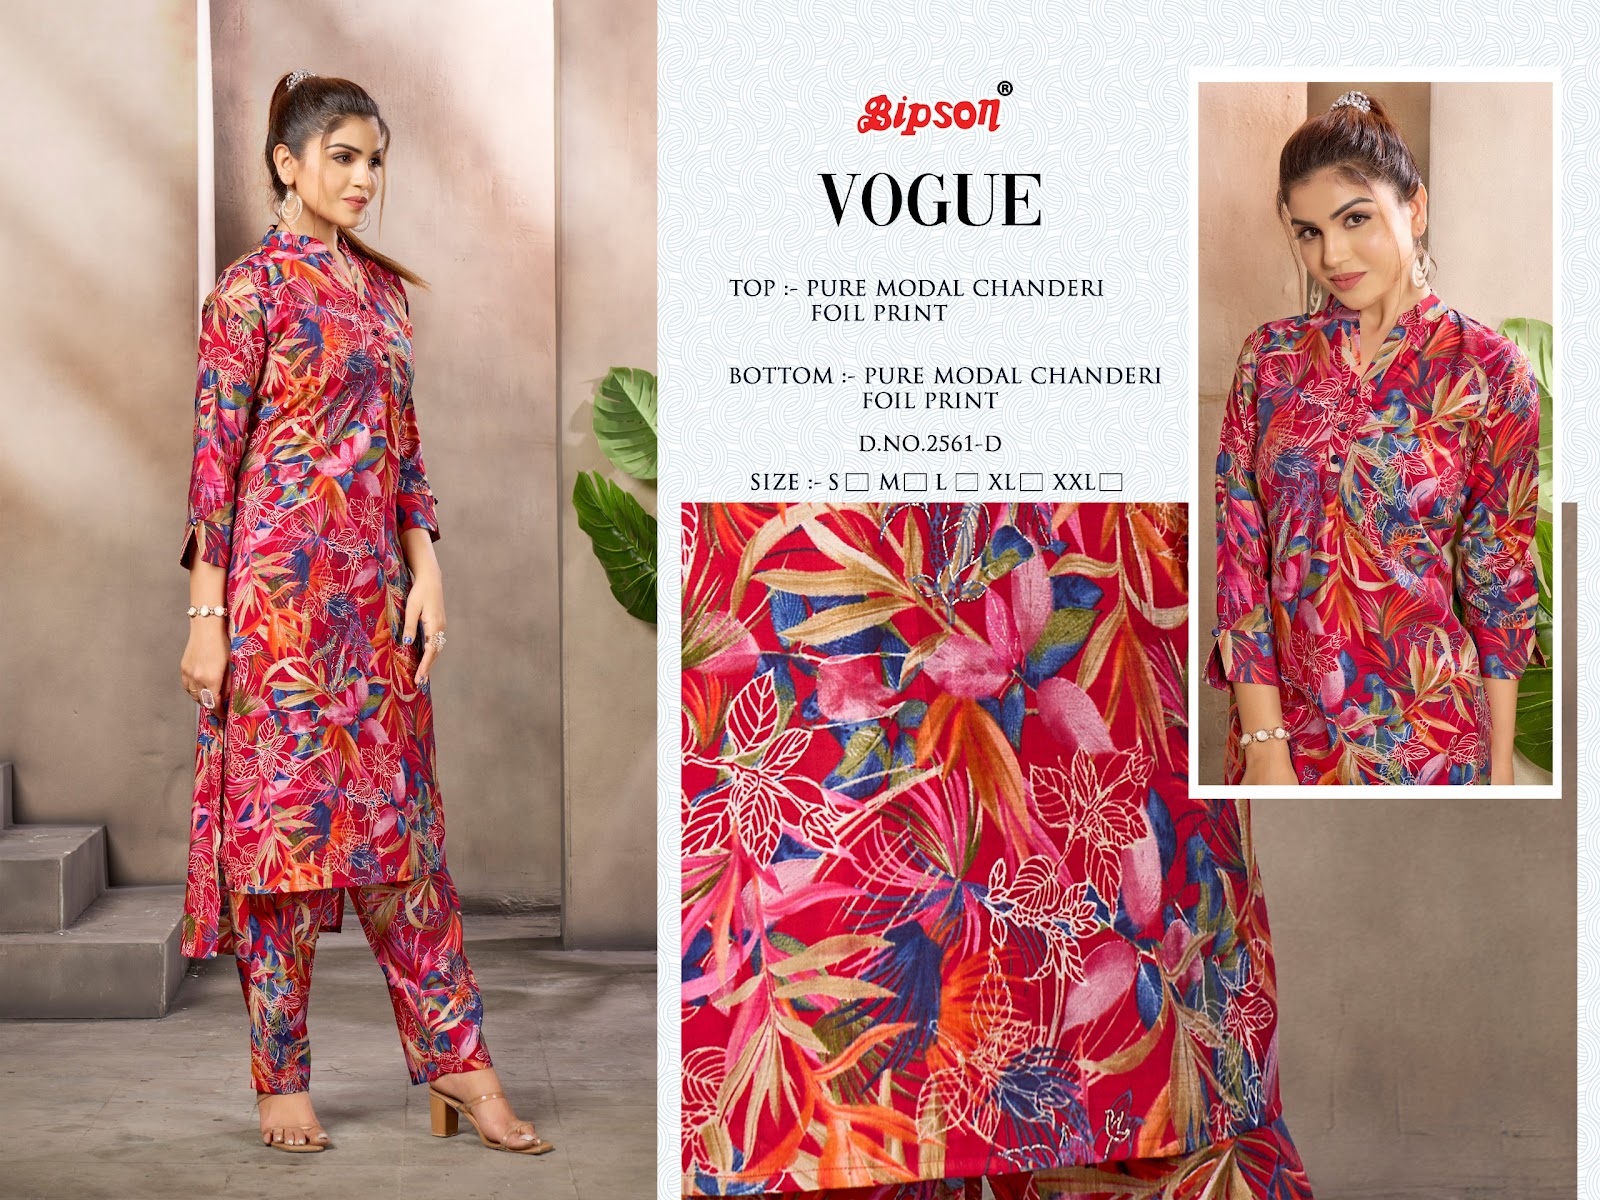 Vogue 2561 Bipson Prints Modal Chanderi Co Ord Set